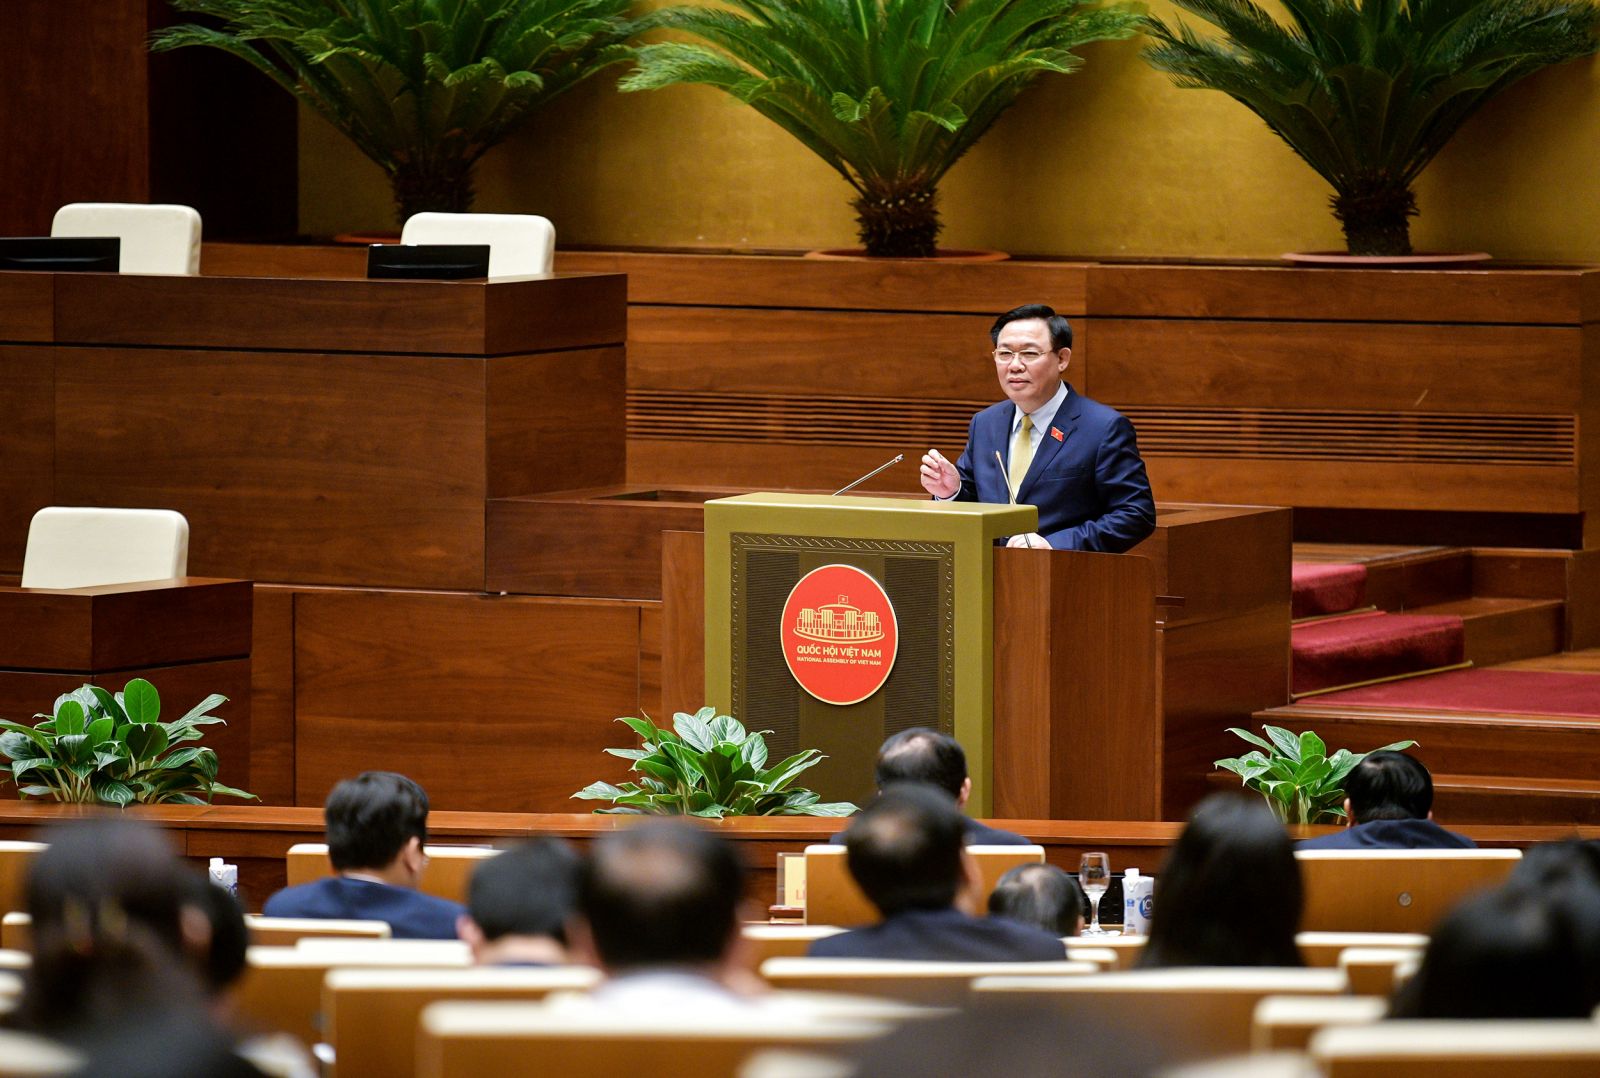 Chủ tịch Quốc hội Vương Đình Huệ tham dự Lễ phát động thi đua hướng tới kỷ niệm 80 năm Ngày Tổng tuyển cử đầu tiên bầu Quốc hội Việt Nam